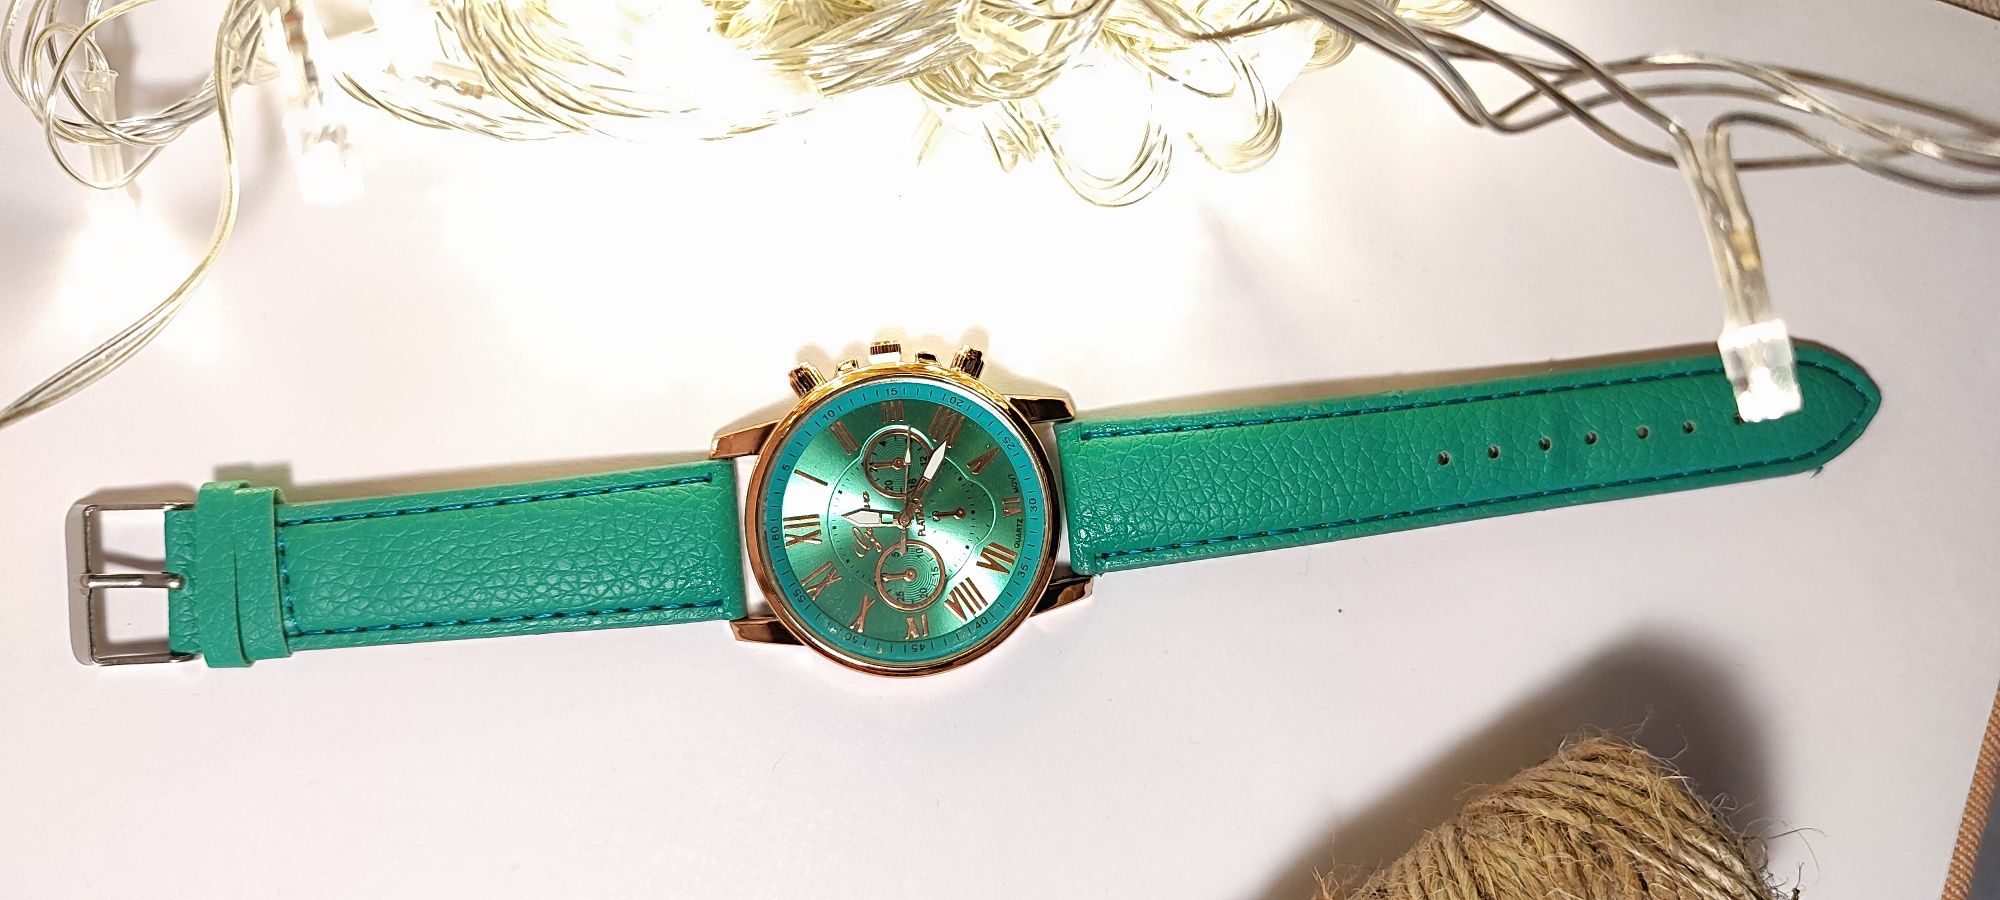 Часы женские, мятно-зеленого цвета